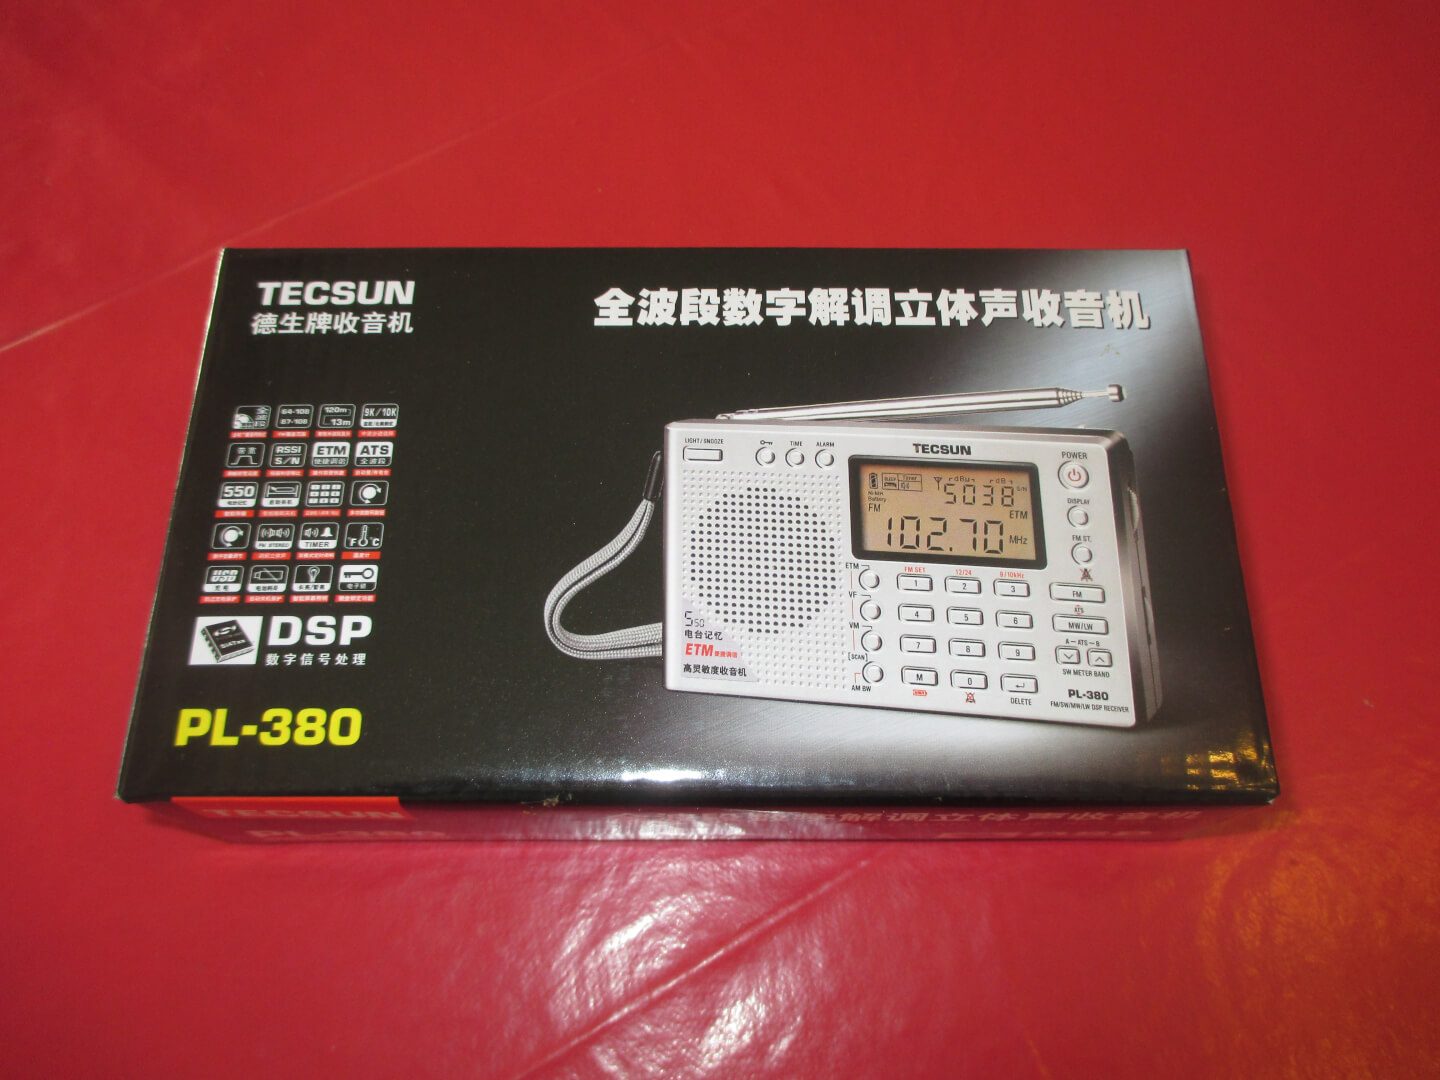 Emballage packaging de la Radio Tecsun PL380